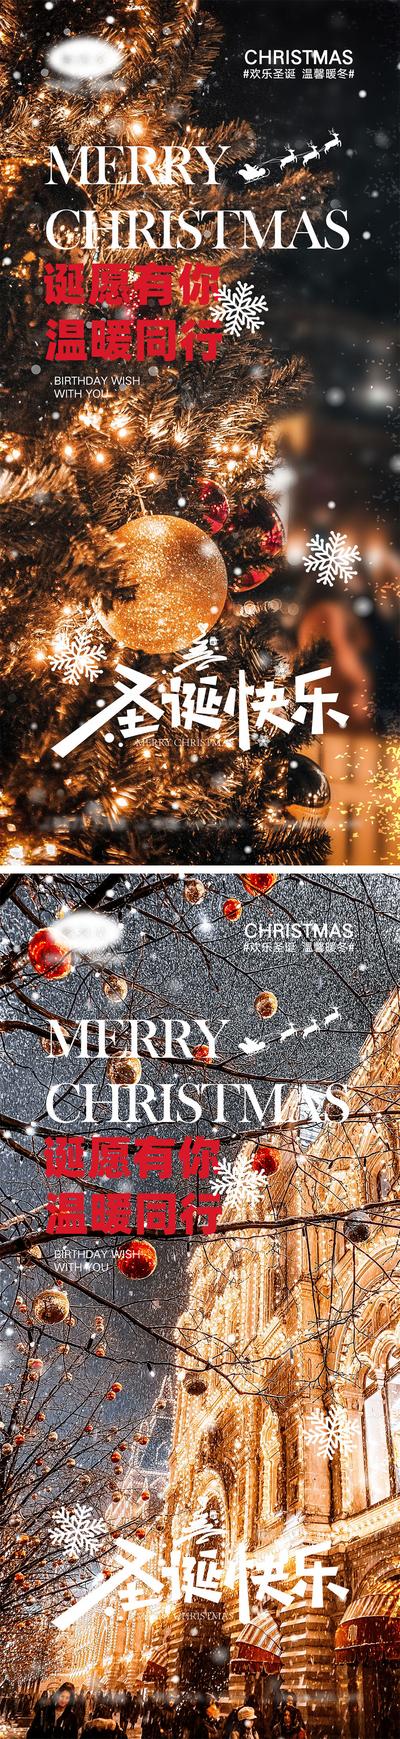 南门网 海报 西方节日 圣诞节 平安夜 圣诞老人 礼物 麋鹿 圣诞树 下雪 礼品